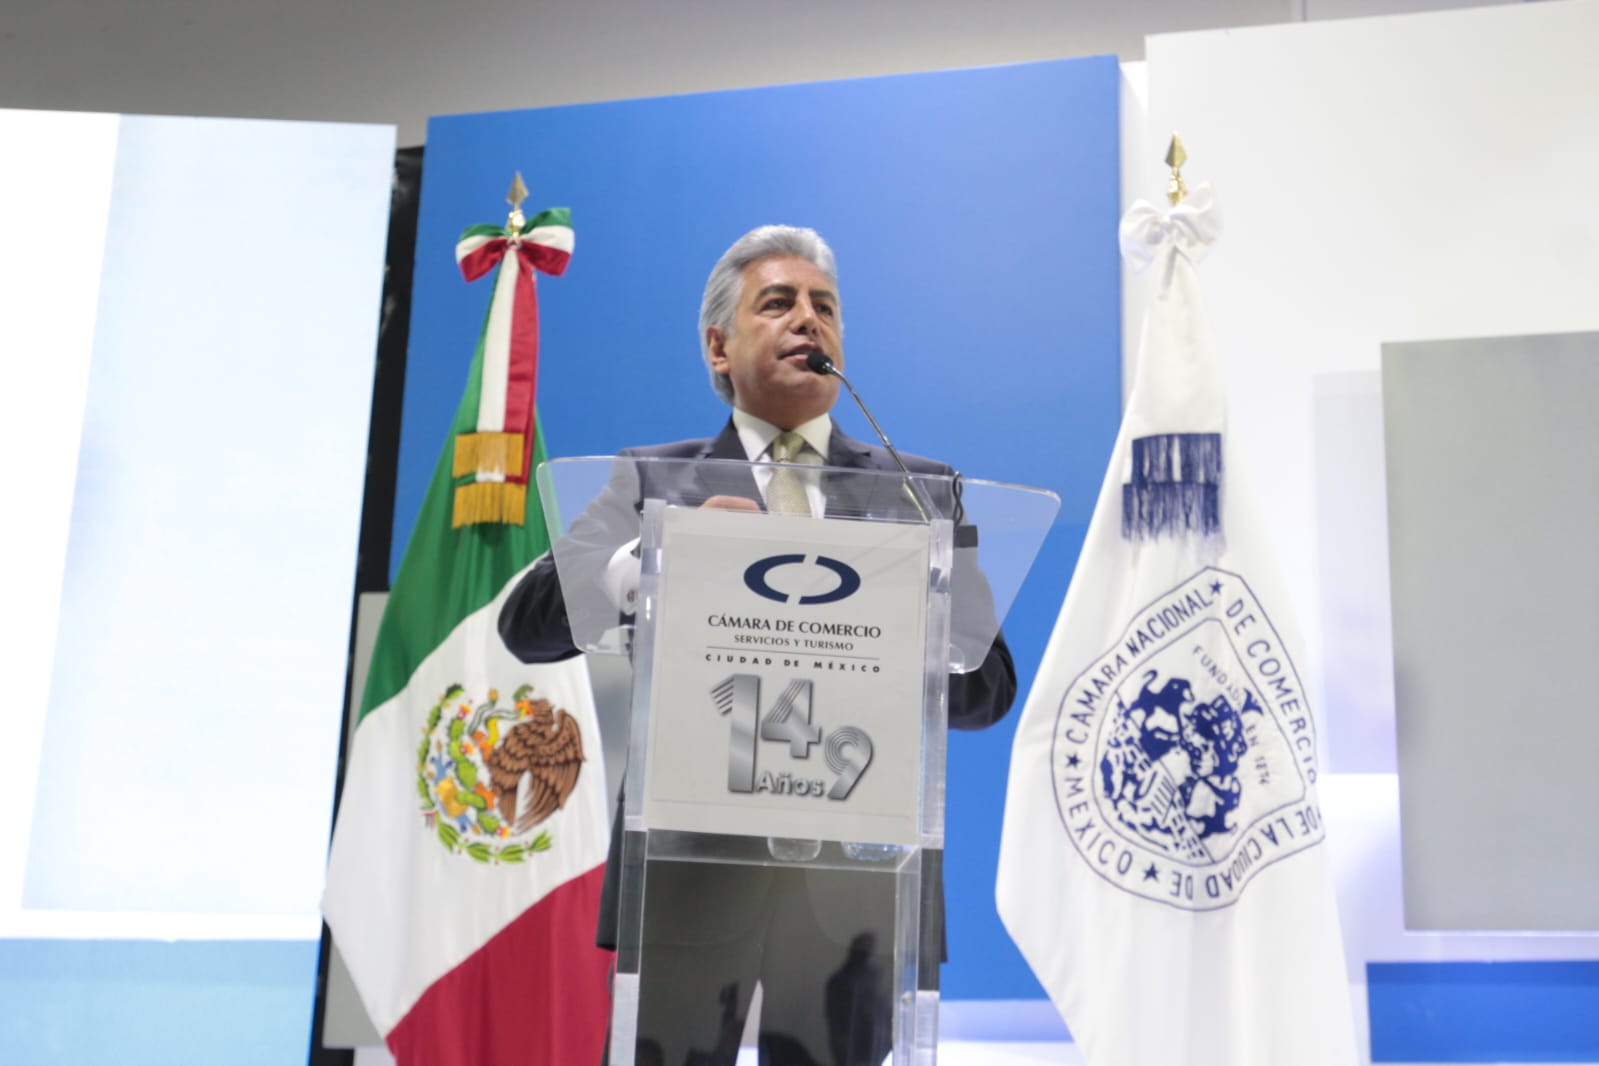 "Ausencia de seguridad equivale a ingobernabilidad", dice Canaco CDMX